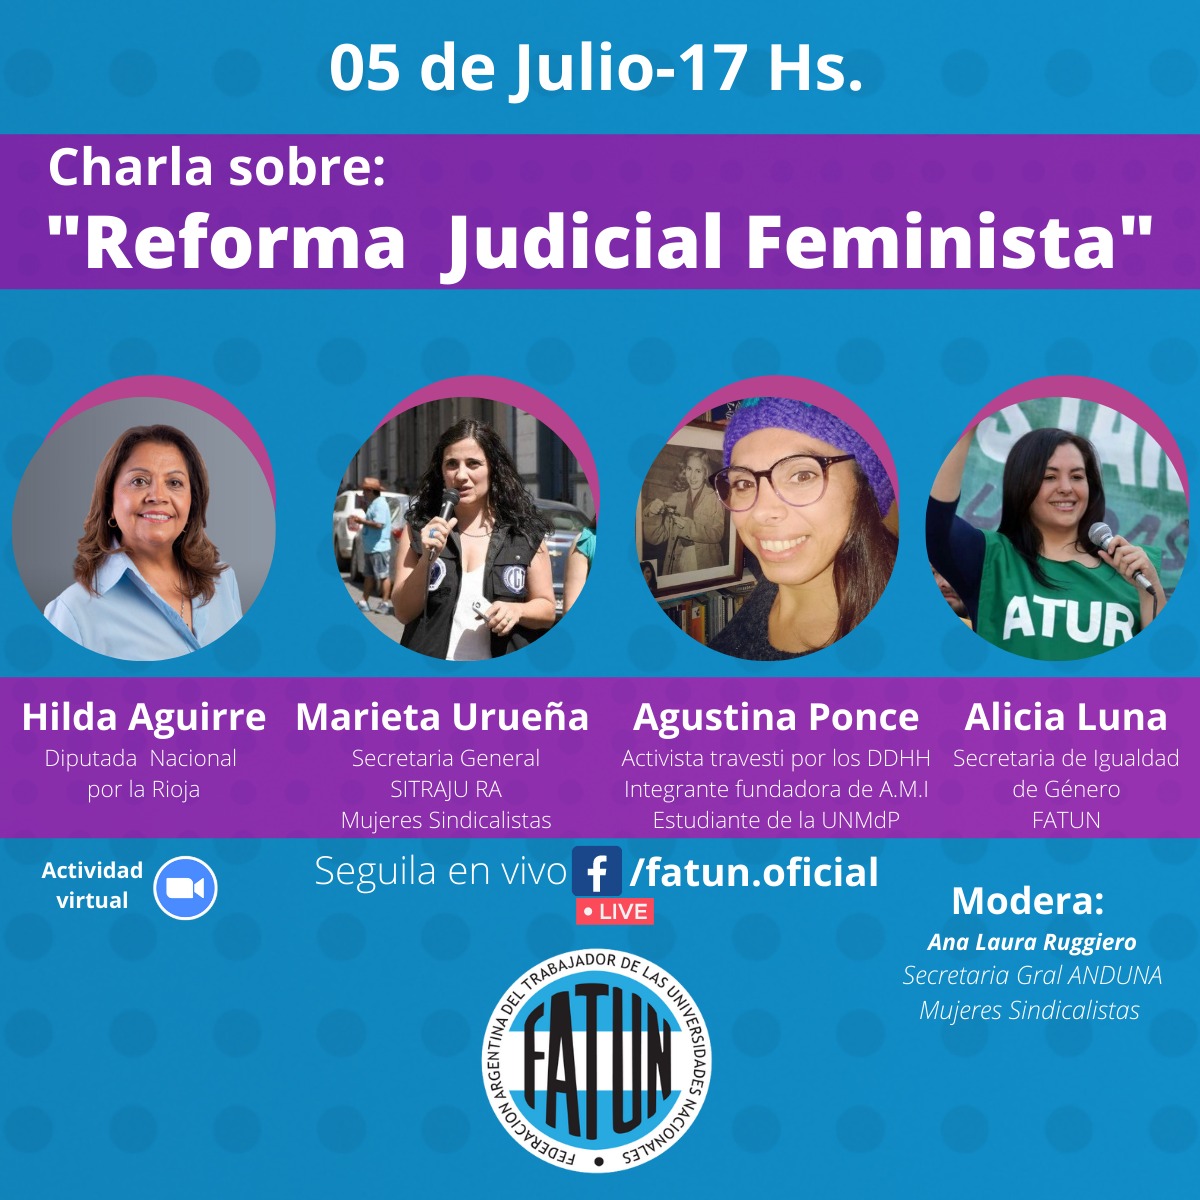 FATUN Invita A La Charla Virtual “Reforma Judicial Feminista”: Enterate De Qué Se Trata